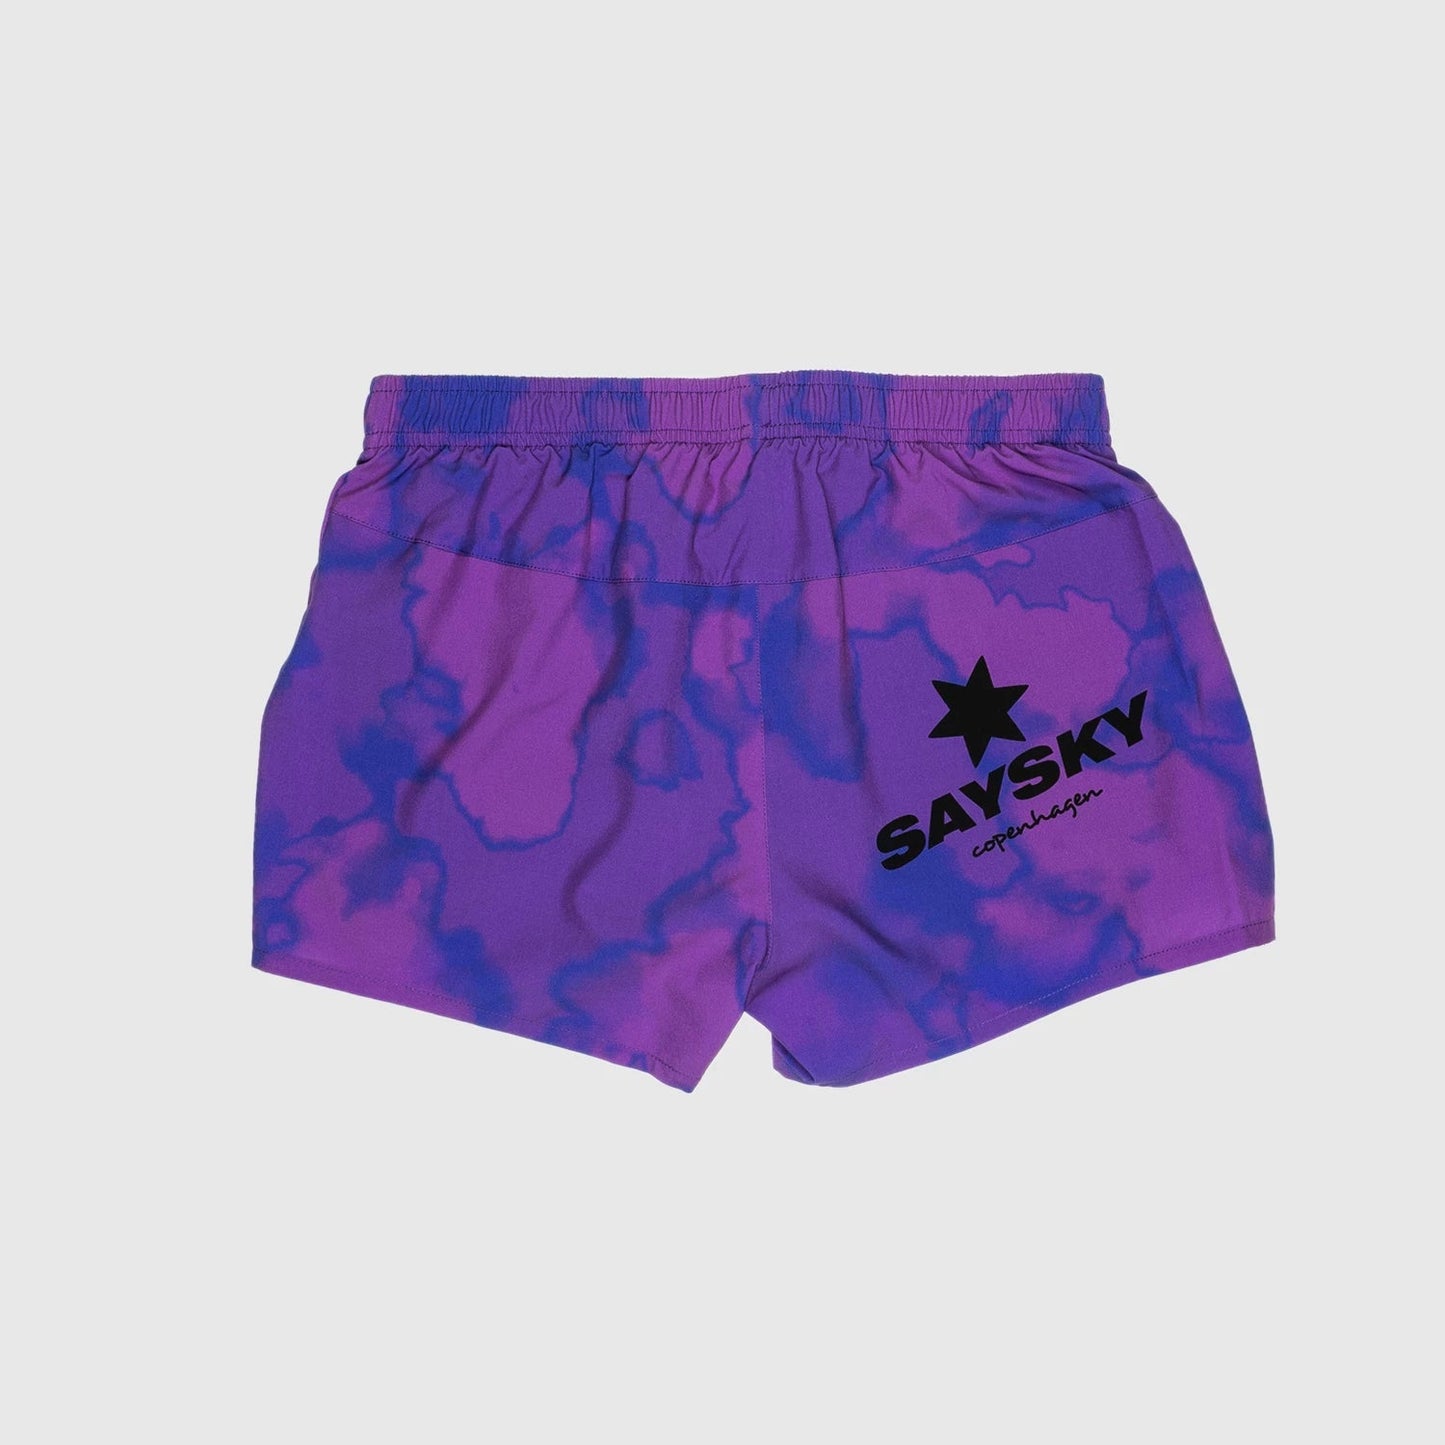 ランニングショーツ HGRSH04 Wmns Pace Shorts - Purple Toxicity [レディーズ]